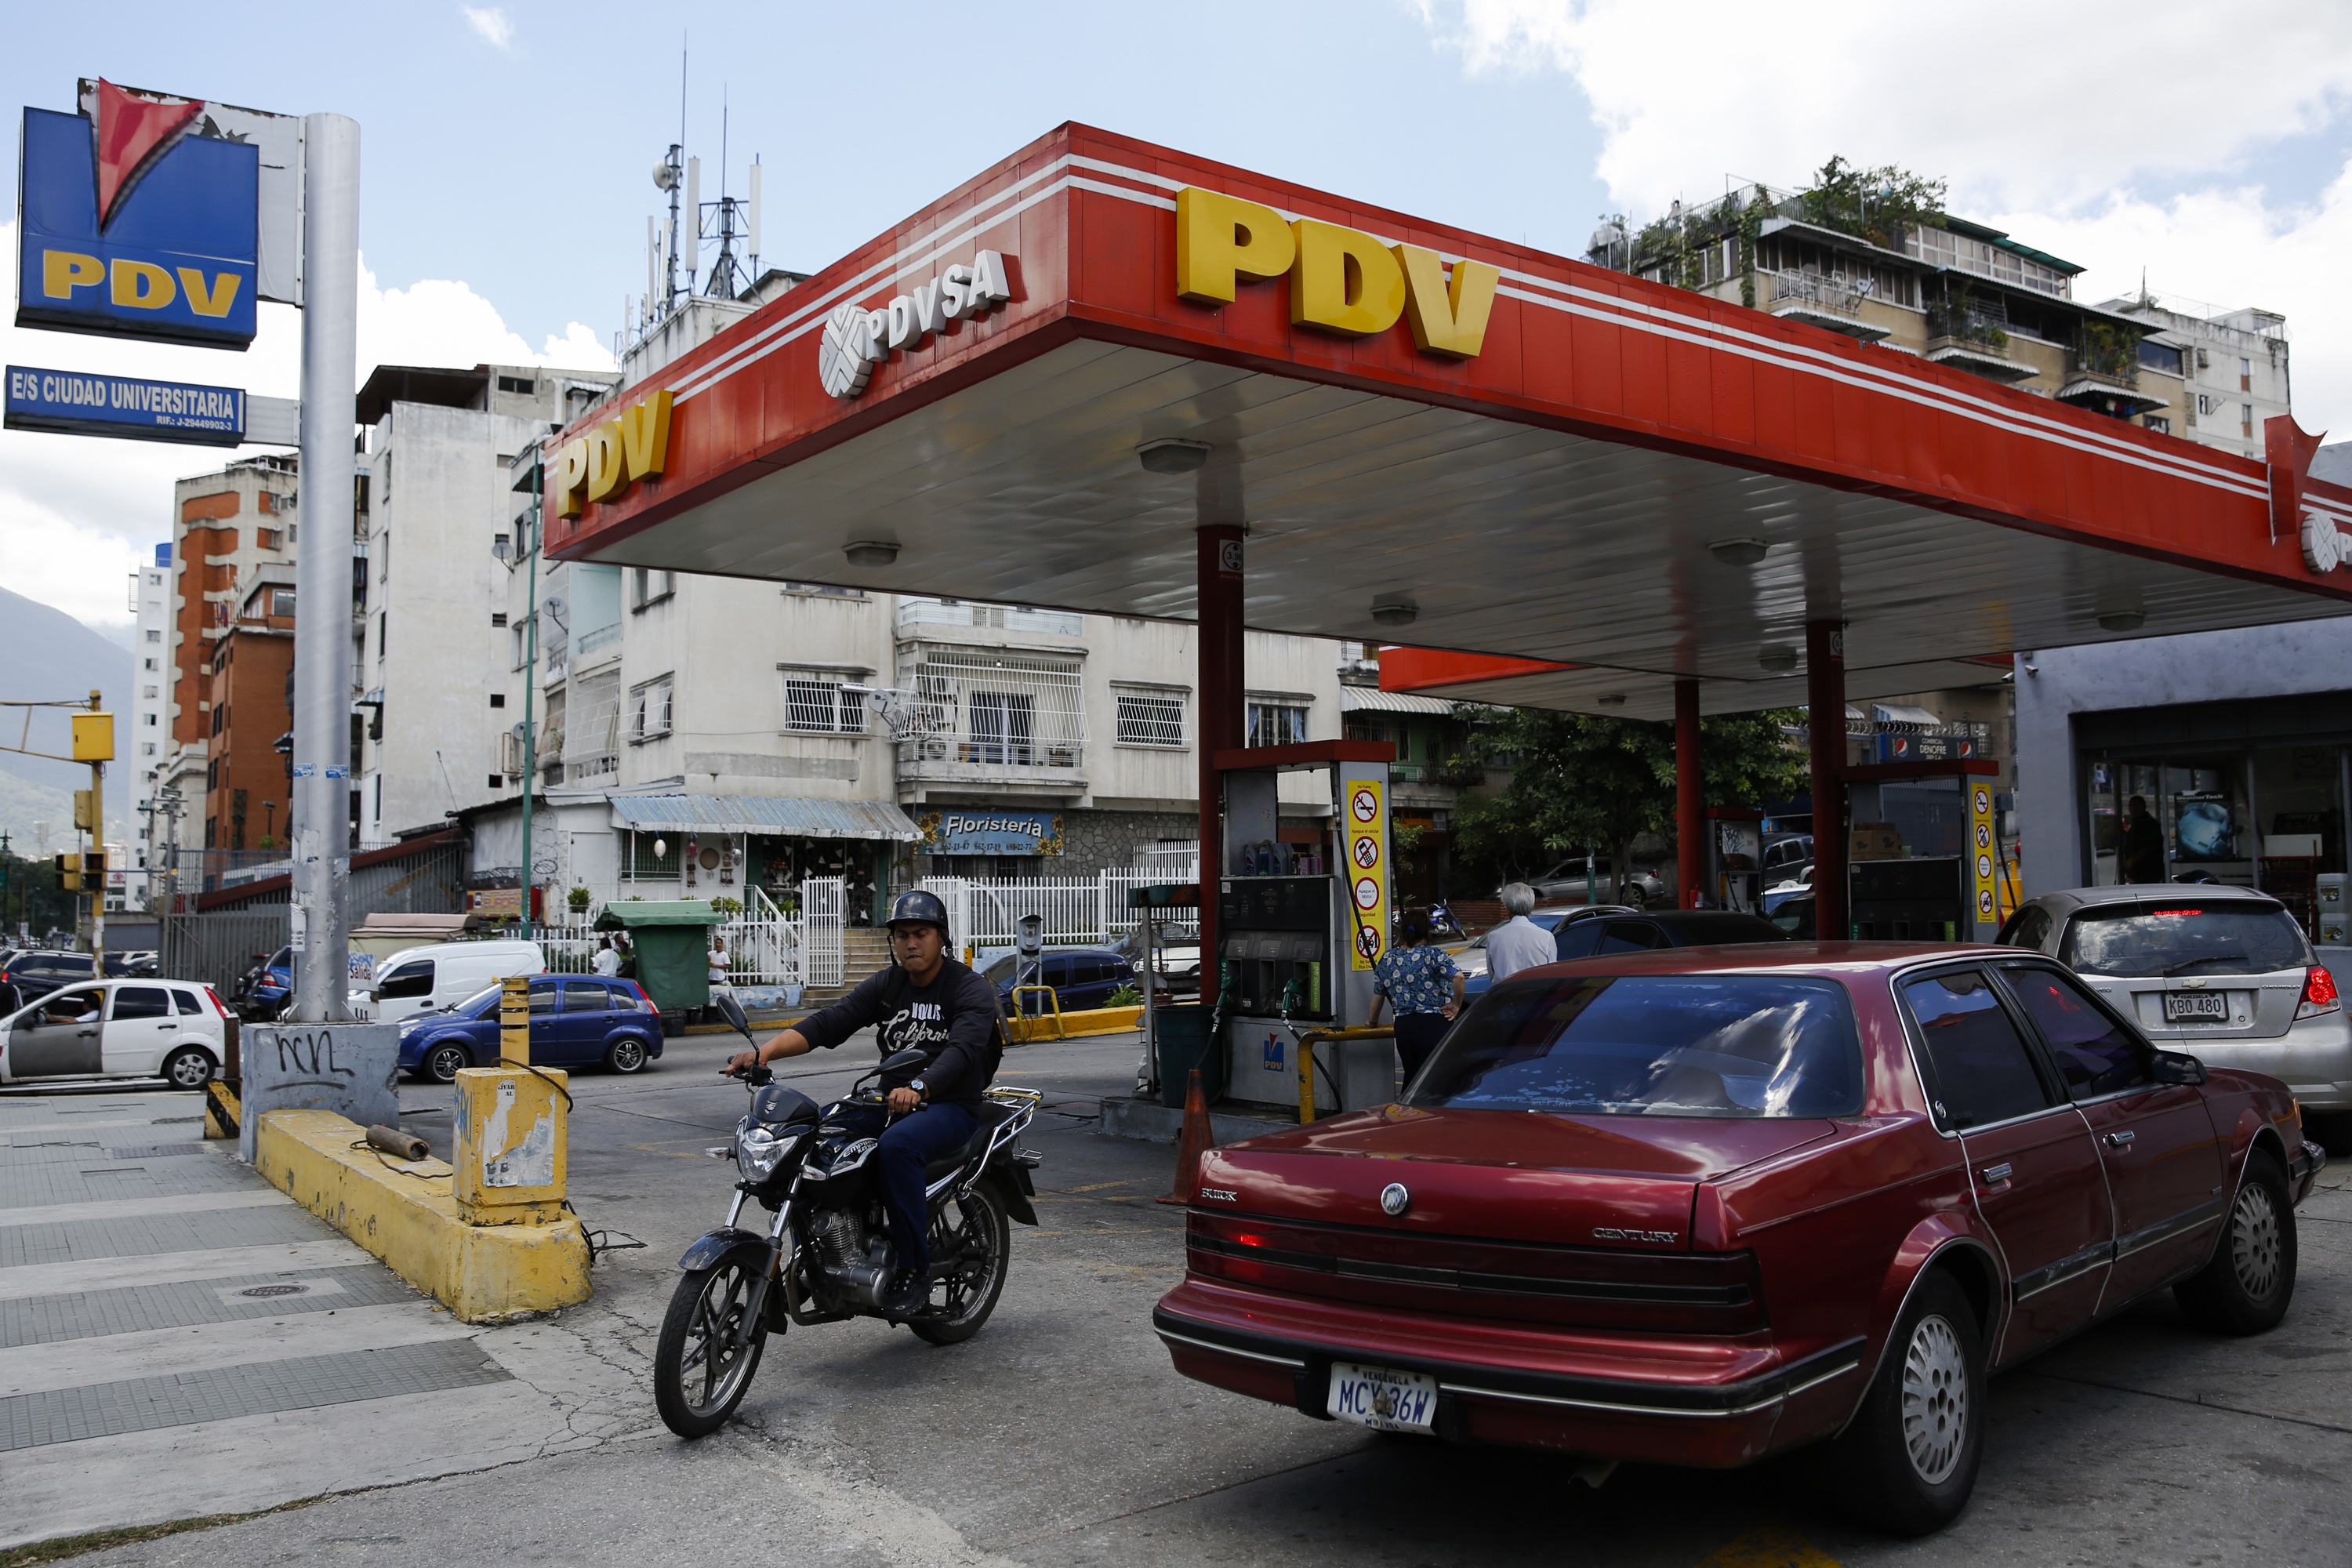 Pdvsa reanuda exportaciones de diésel ultrabajo en azufre tras dos meses de pausa